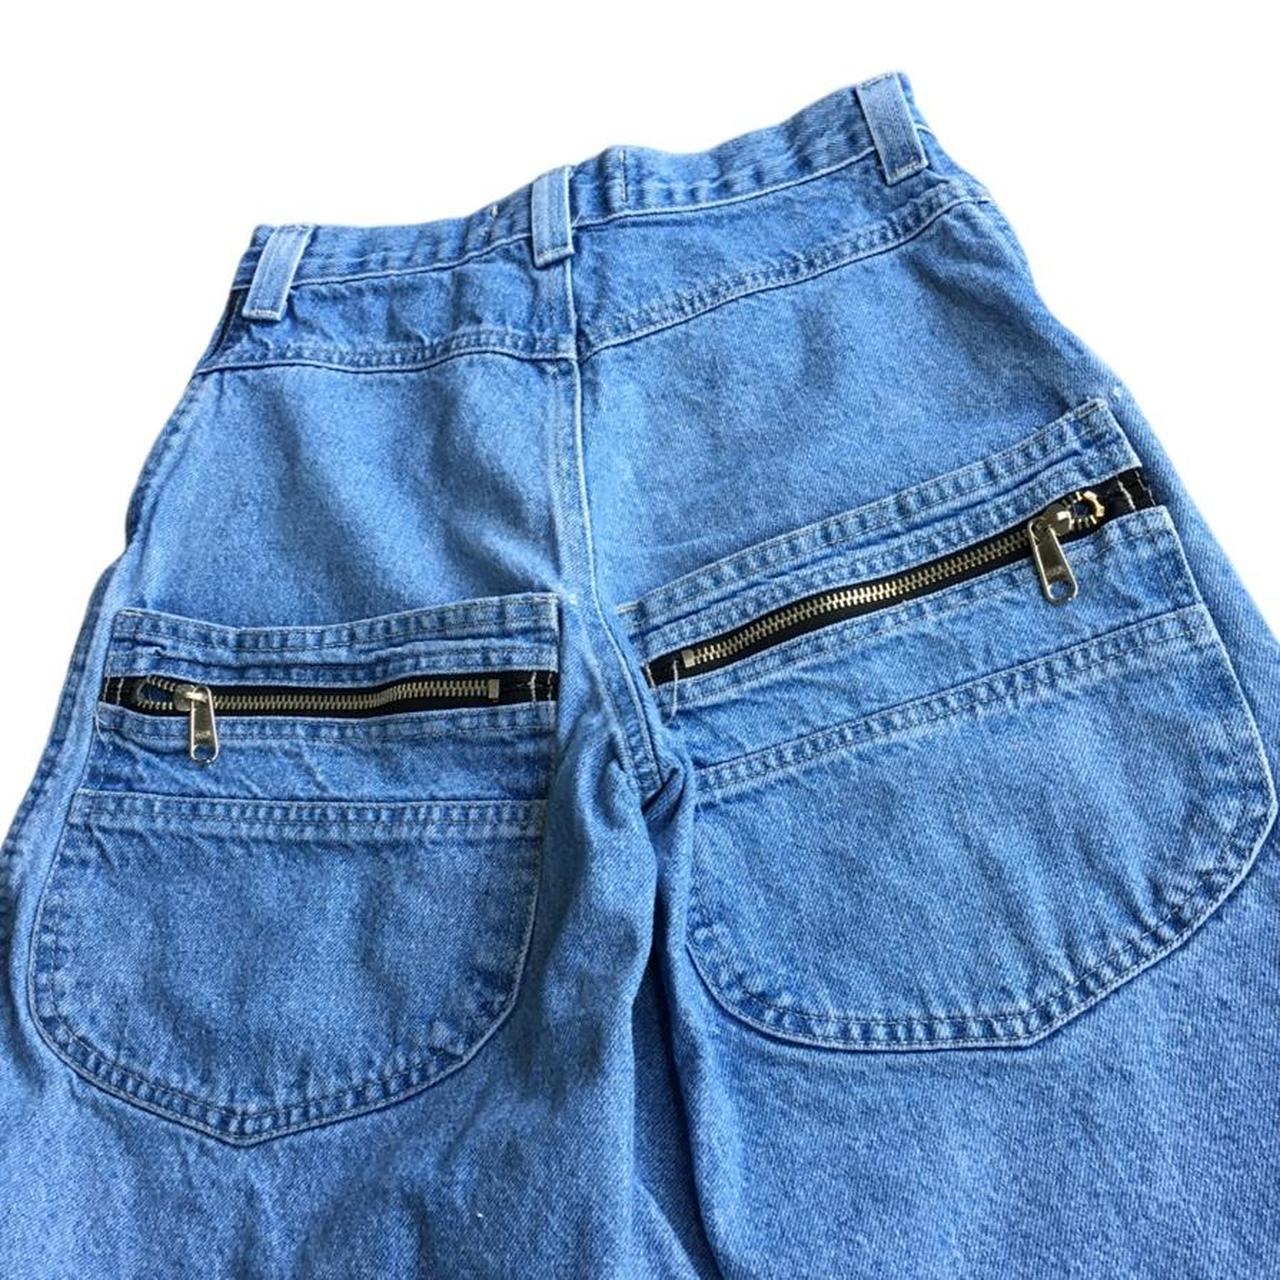 90S Embellished Light-Wash Lee Pipes Jean Shorts... - Depop